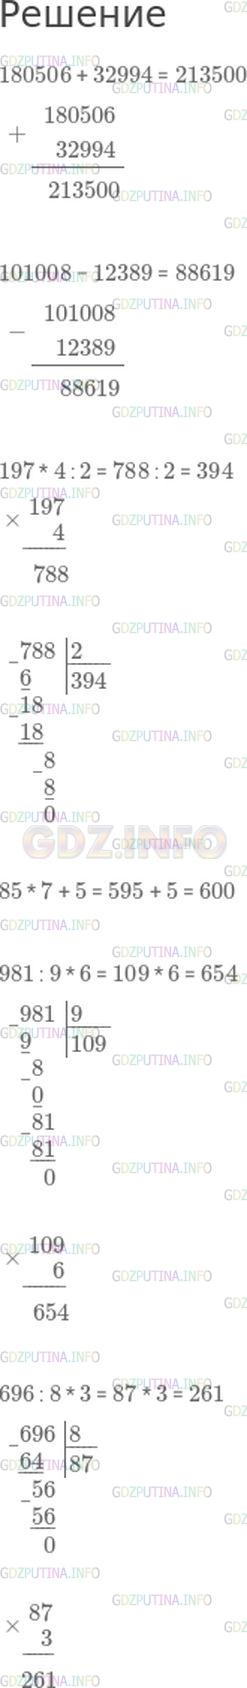 Фото решения 1: Номер №324, Часть 1 из ГДЗ по Математике 4 класс: Моро М.И. г.